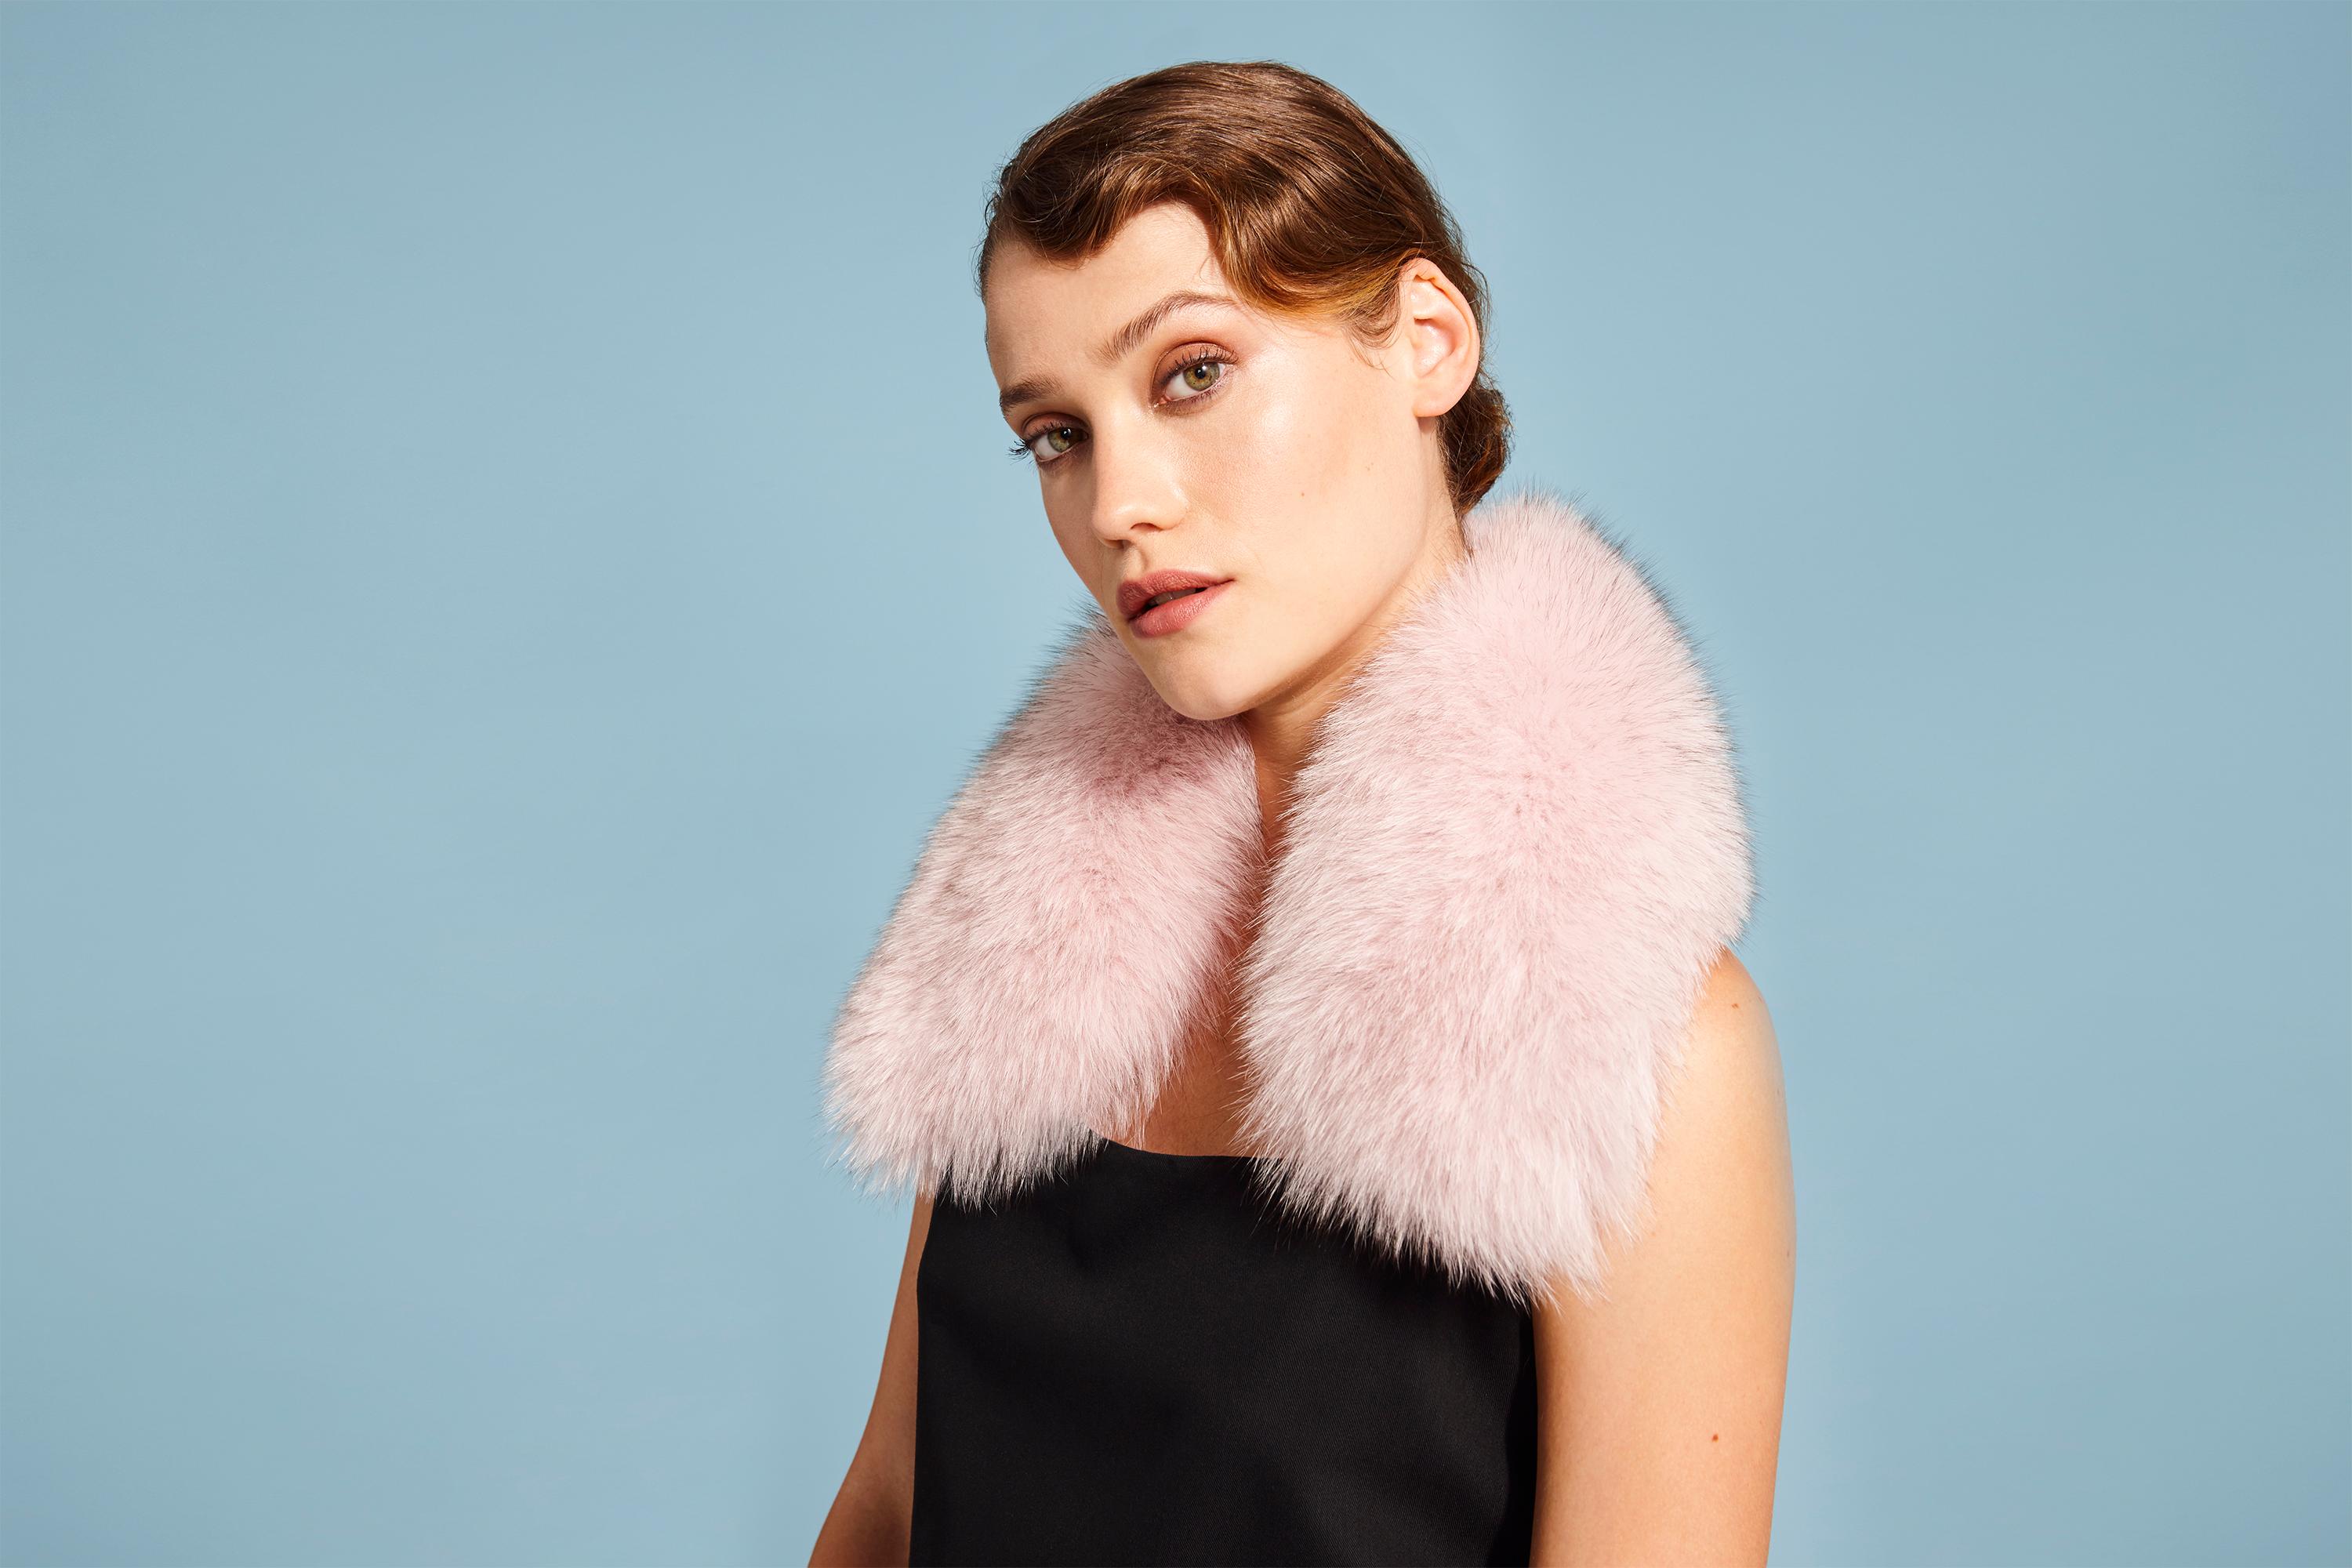 White Verheyen London Peter Pan Collar in Pastel Rose Pink Fox Fur - Brand New 